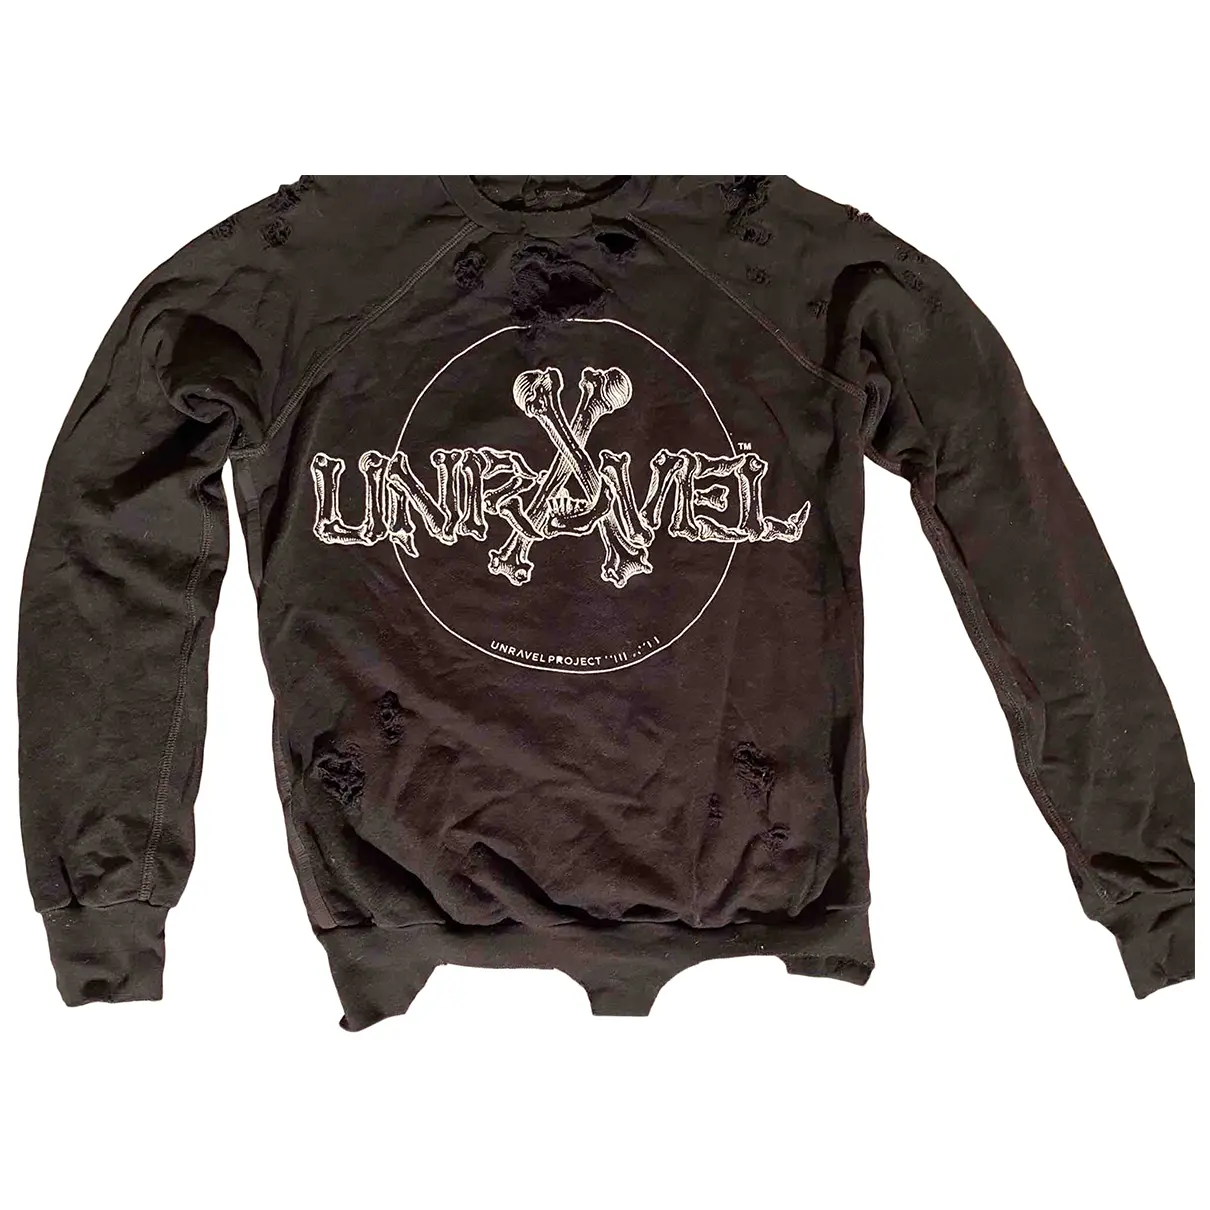 Buy Unravel Project Knitwear online